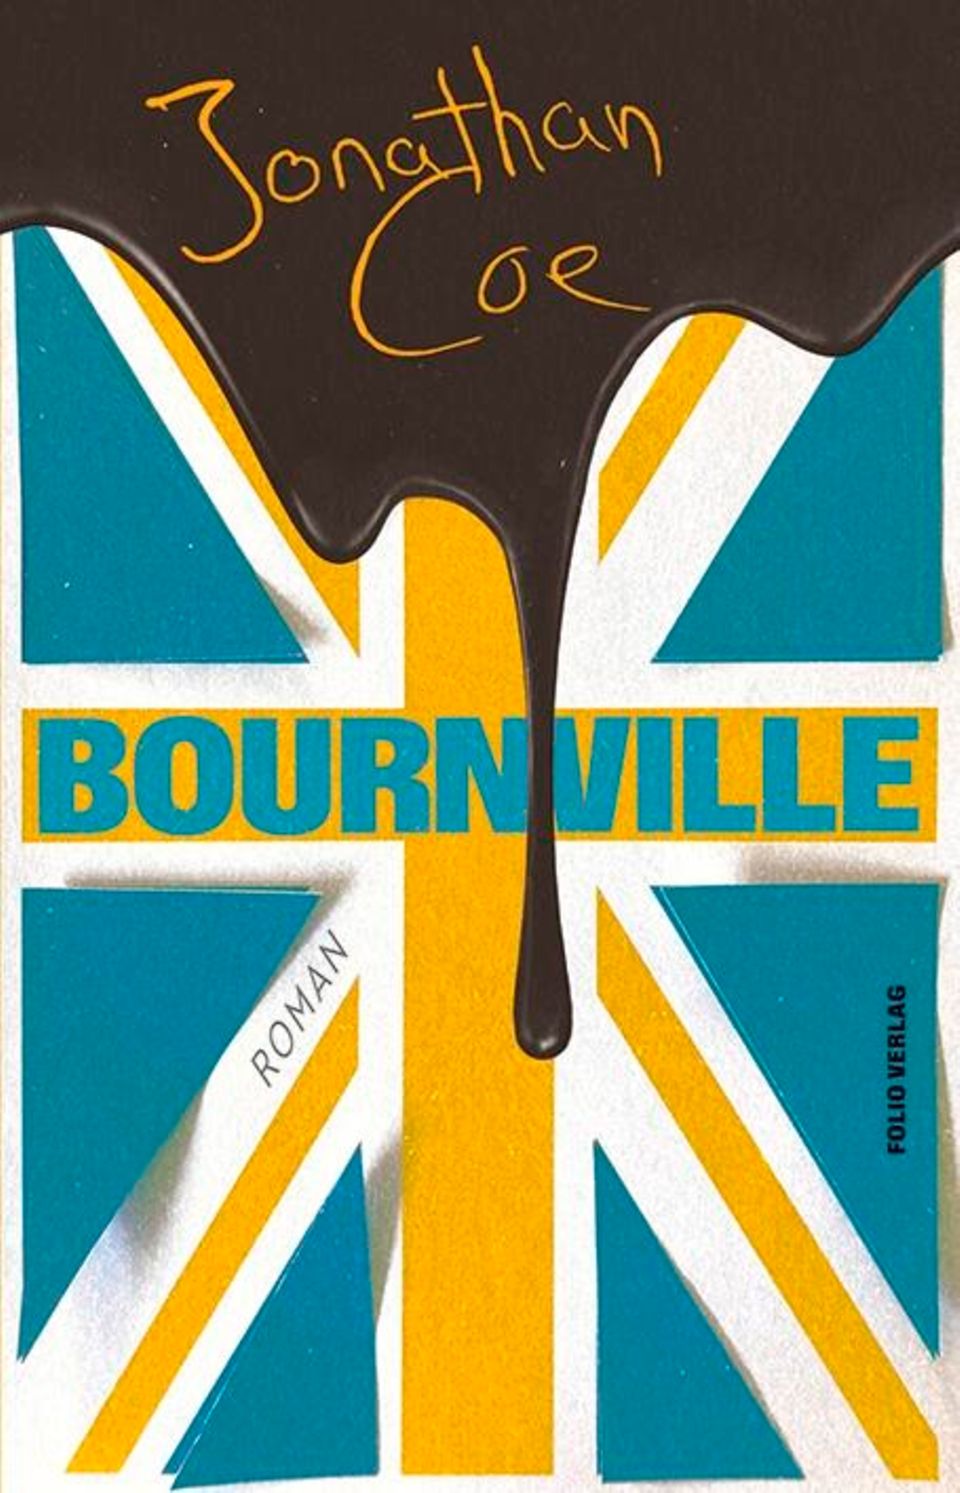 Buchtipps der Redaktion: Buchcover "Bournville"